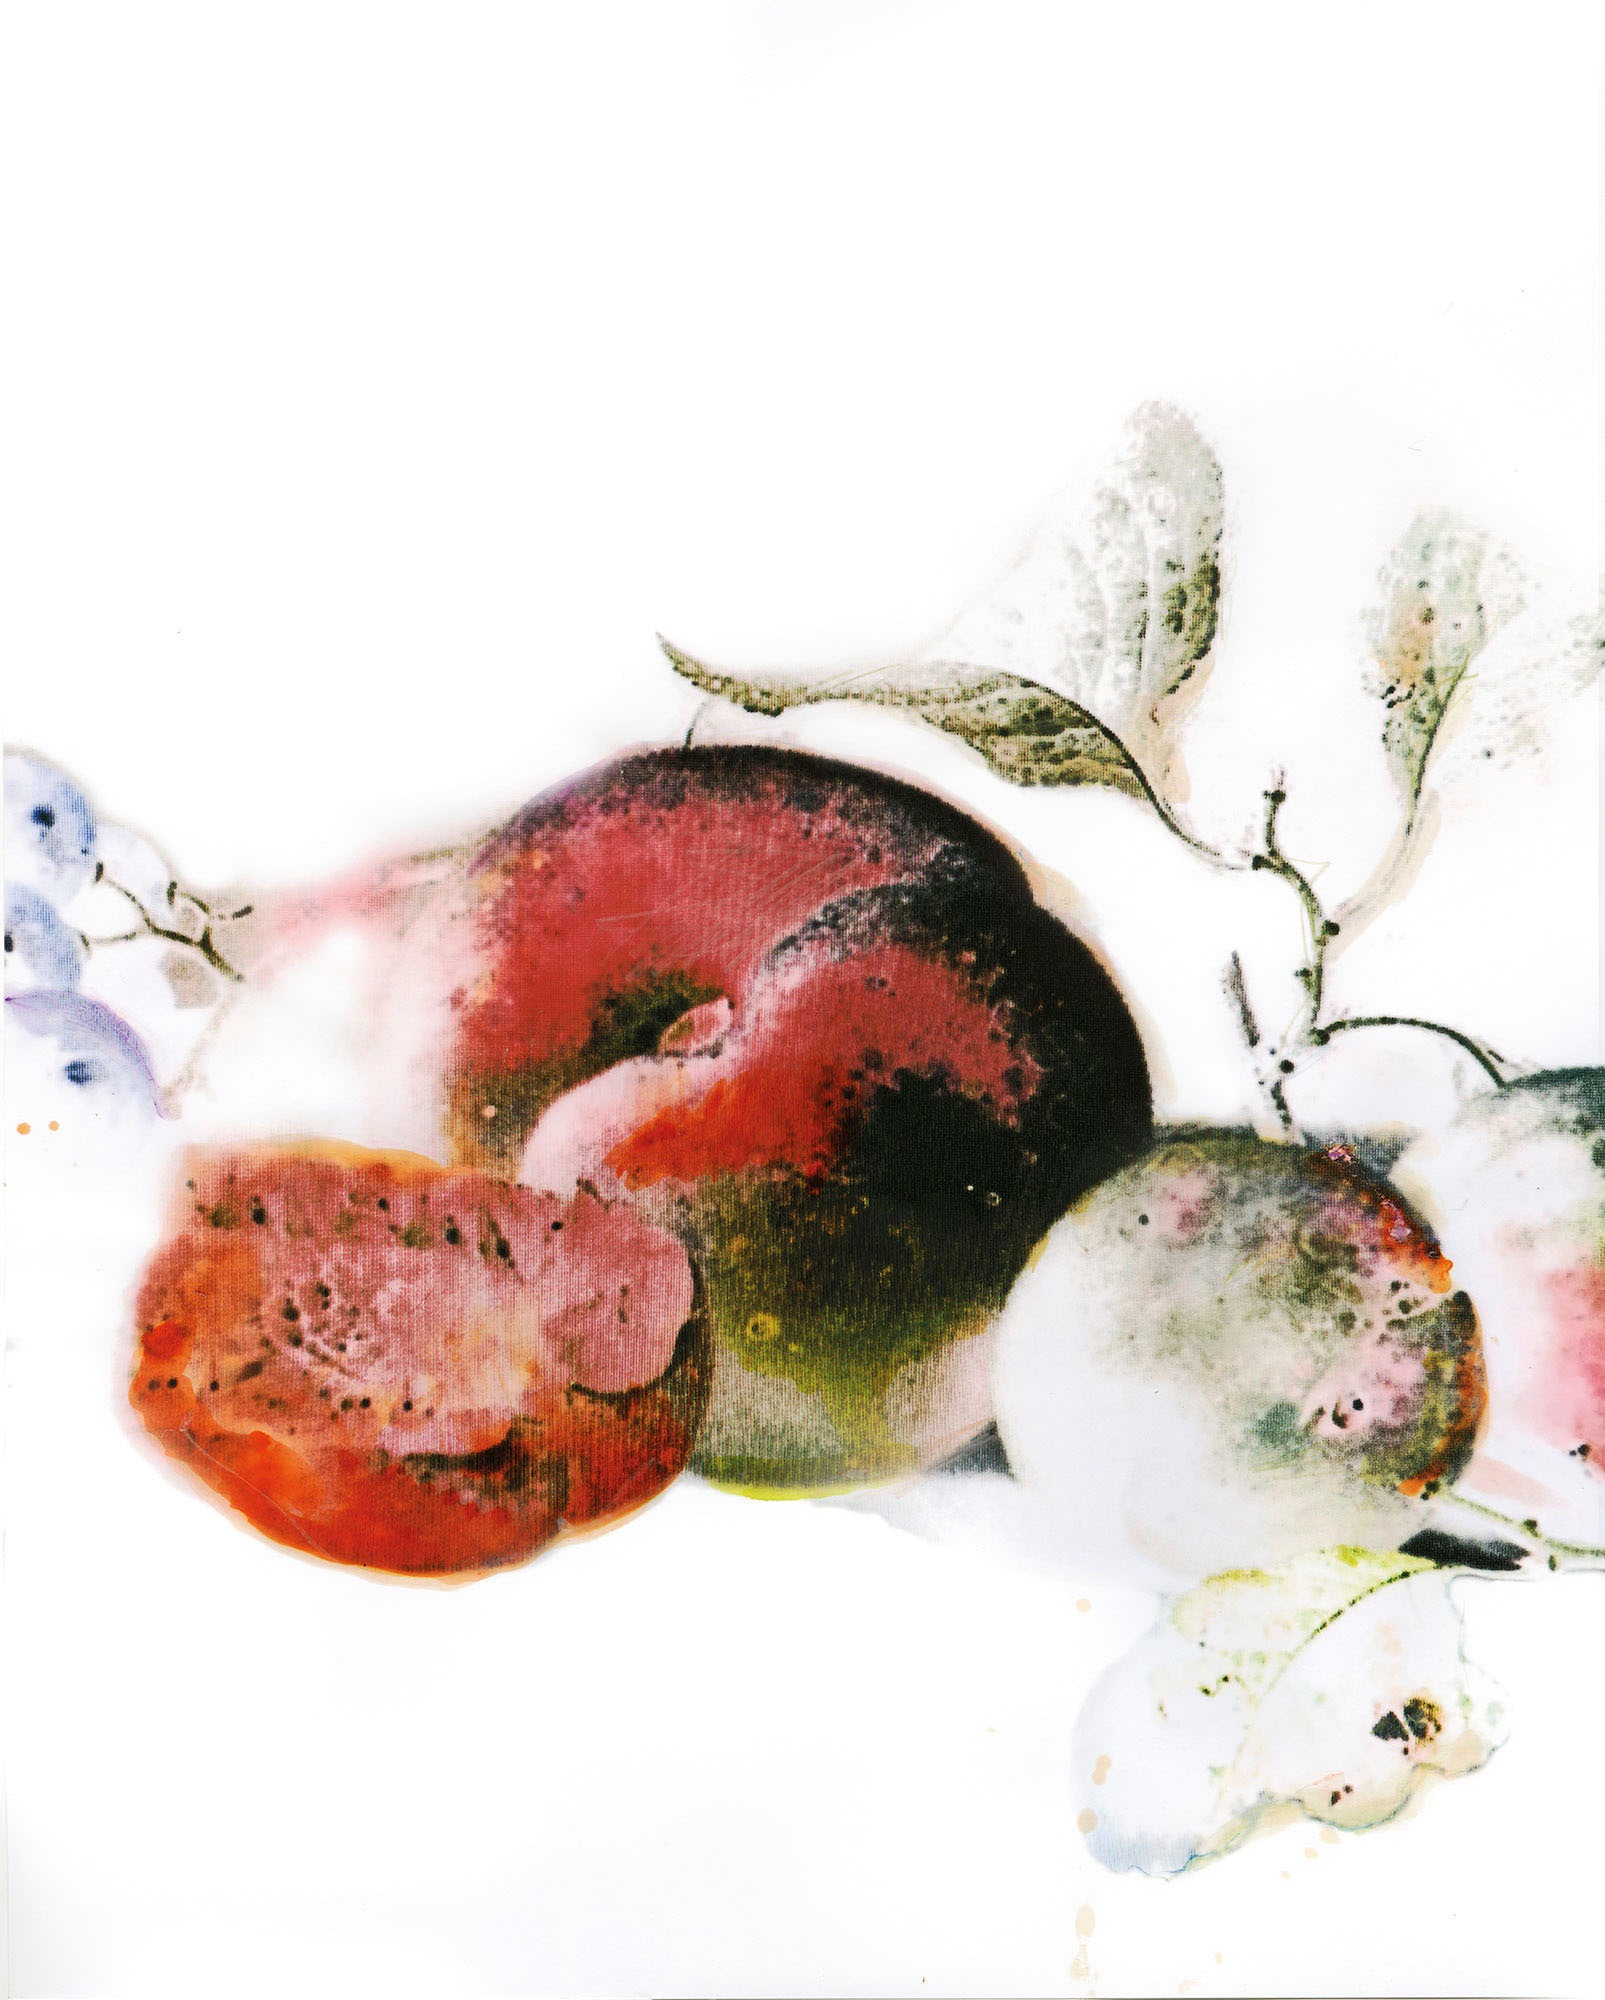 Komar Wandbild »Dessert Fruité«, (1 St.), Deutsches Premium-Poster Fotopapier mit seidenmatter Oberfläche und hoher Lichtbeständigkeit. Für fotorealistische Drucke mit gestochen scharfen Details und hervorragender Farbbrillanz.